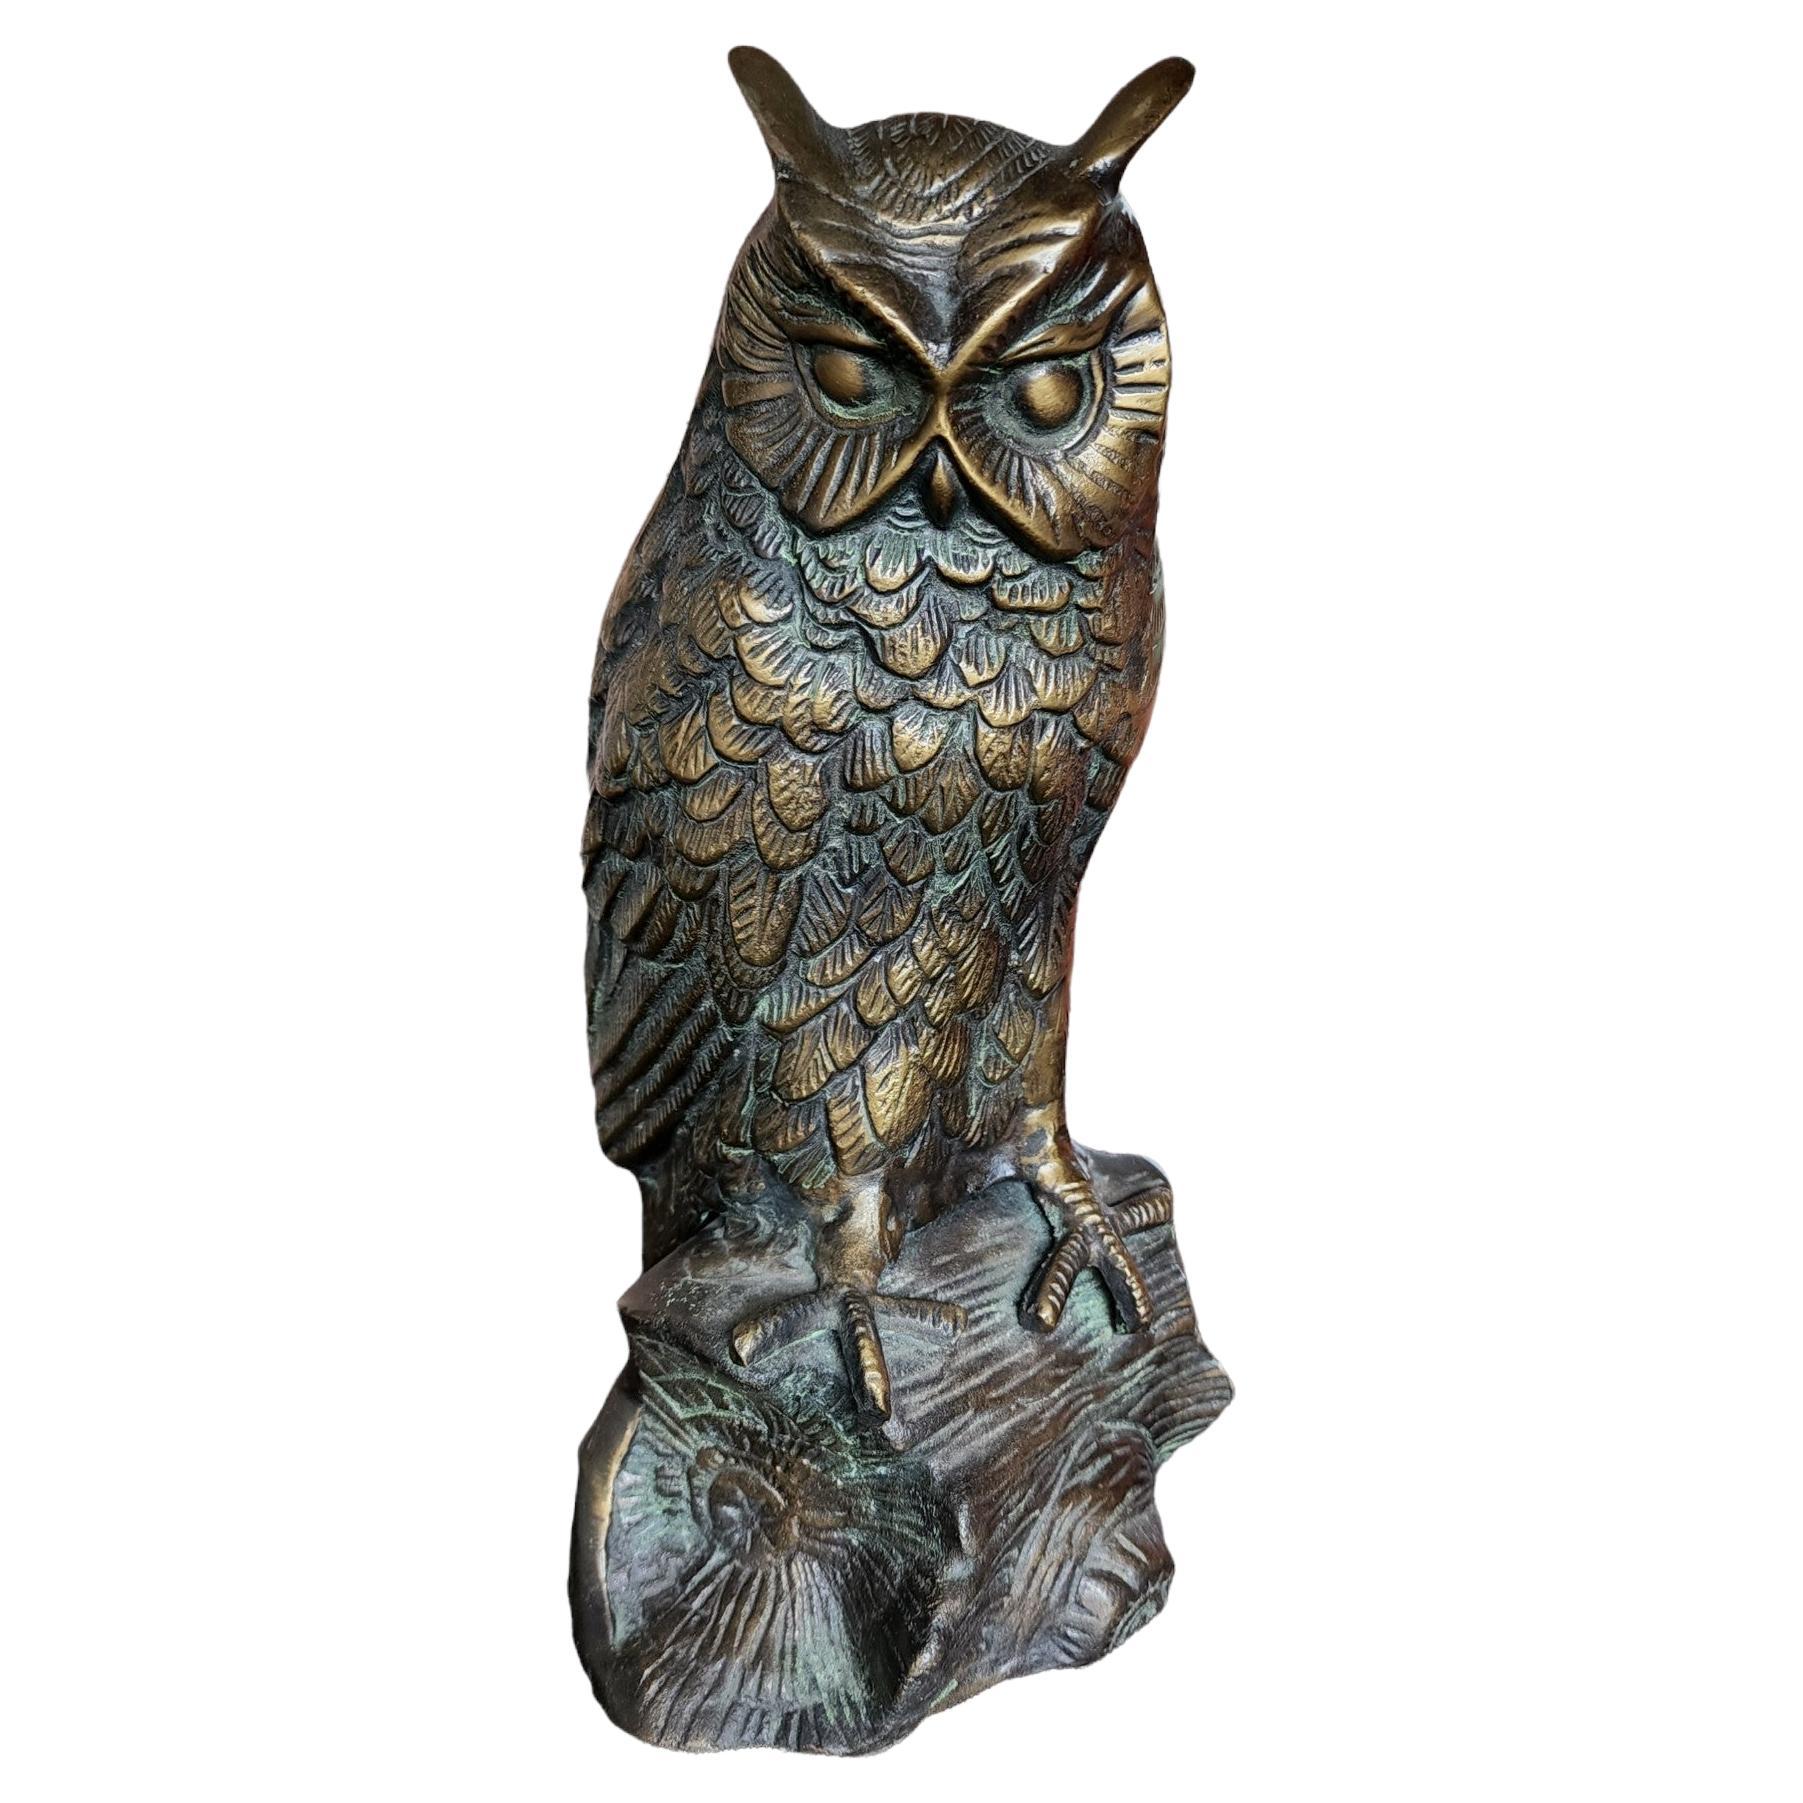 Antique Brass Owl Sculpture, circa 1900